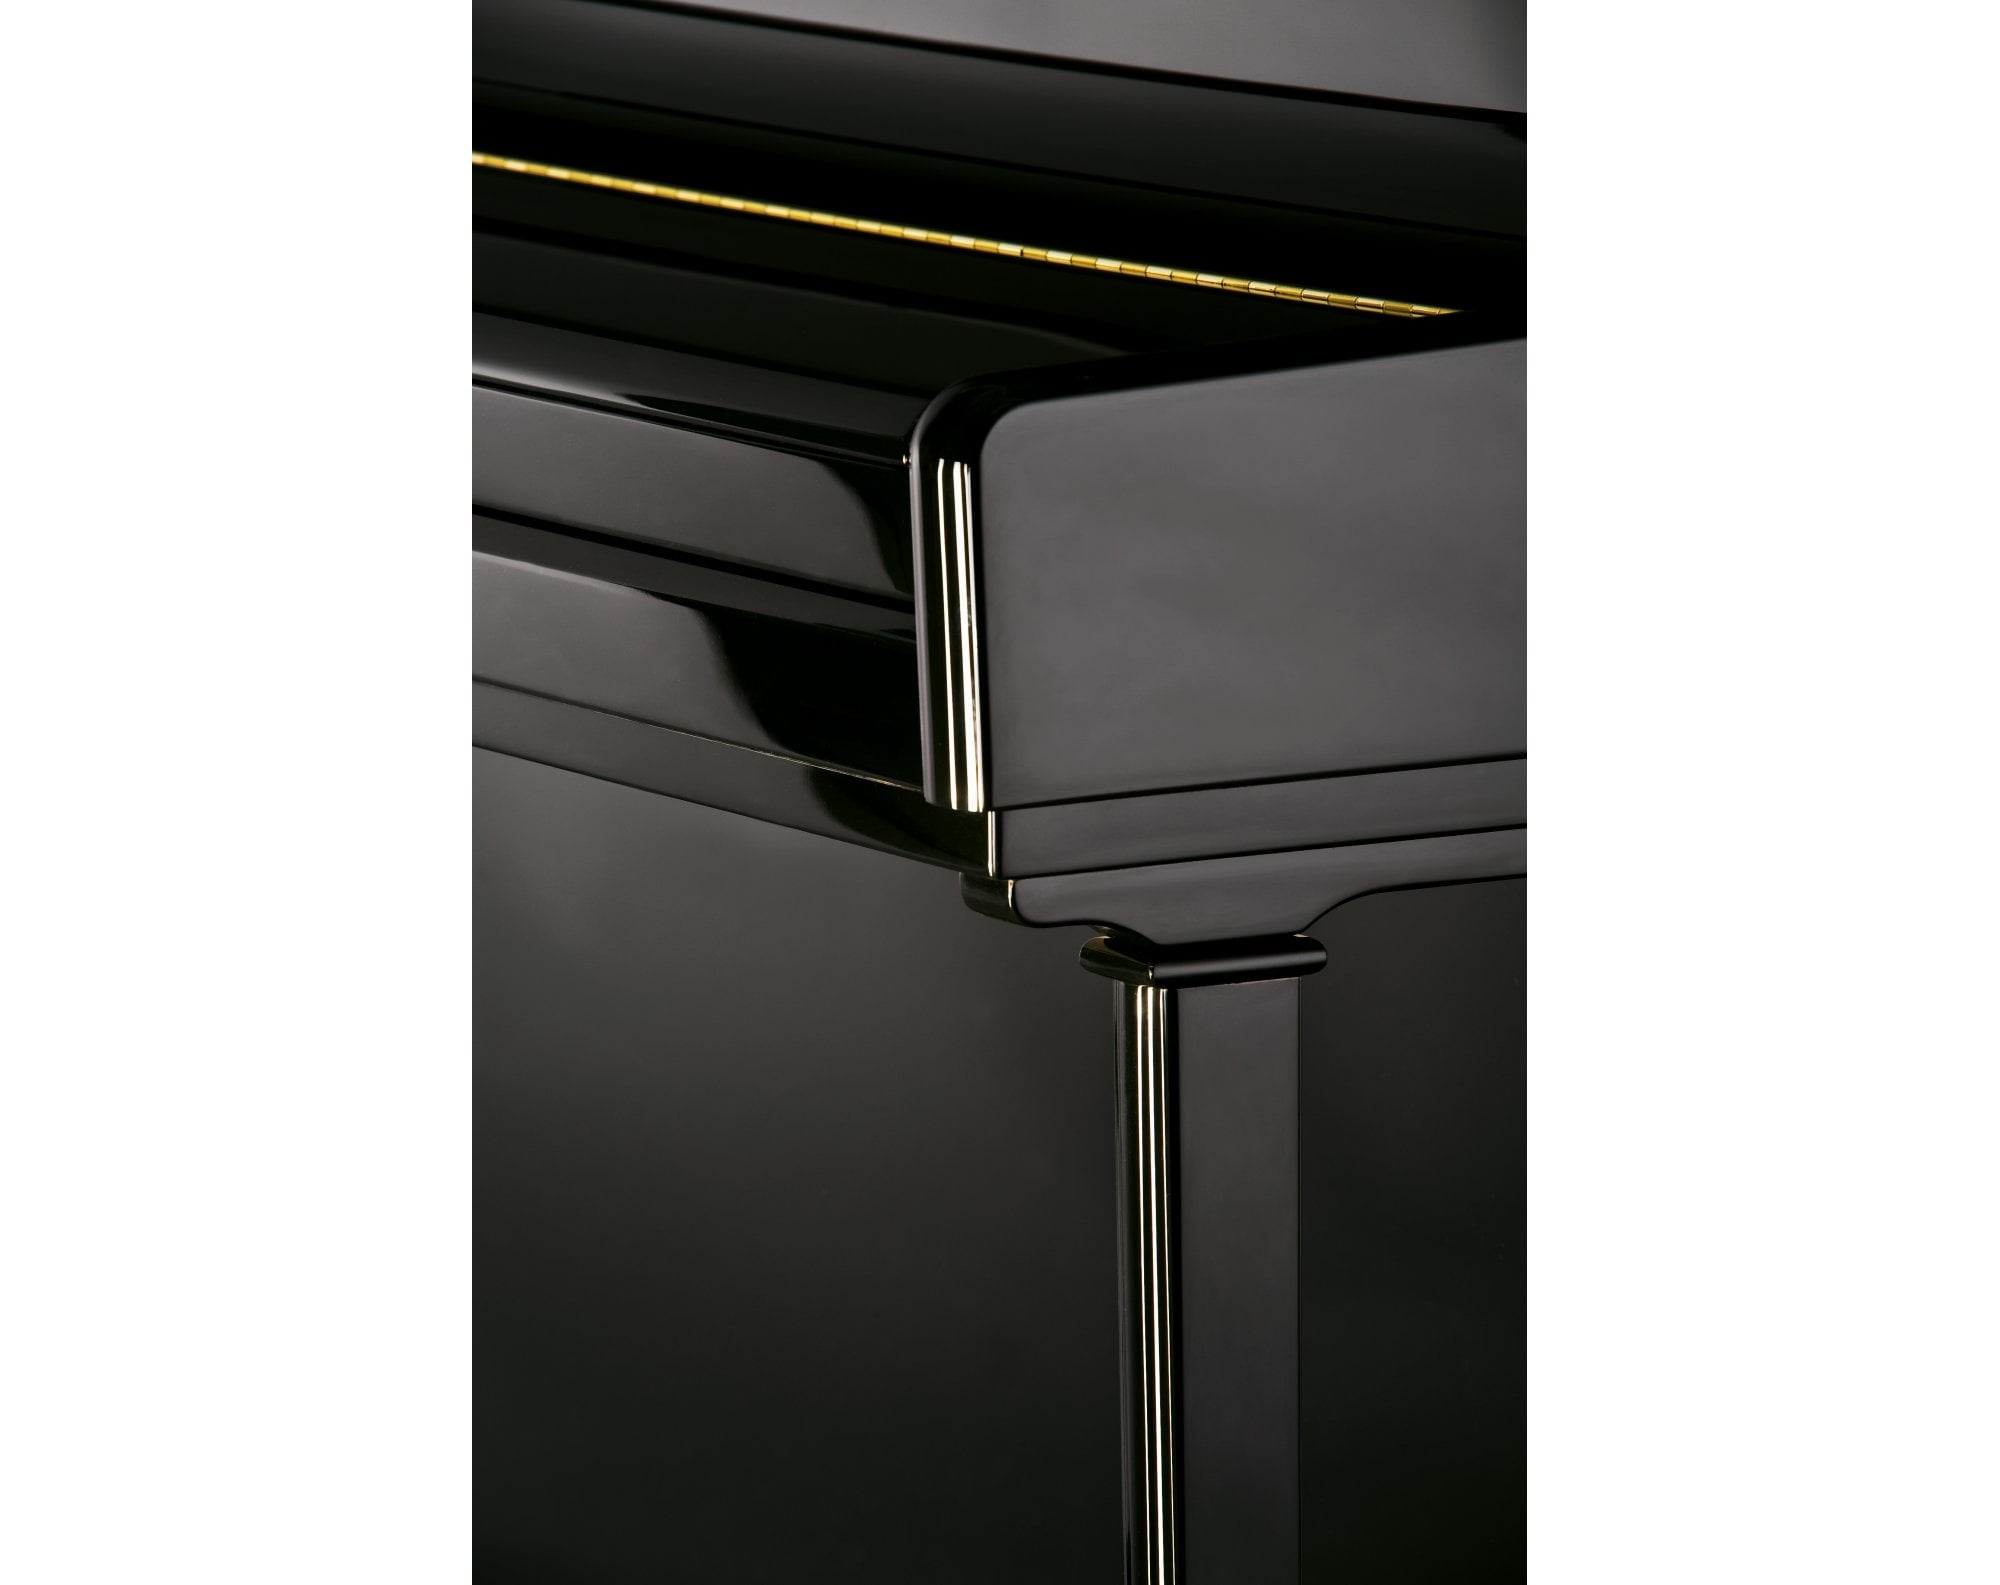 C.Bechstein Elegance 124 Upright Piano